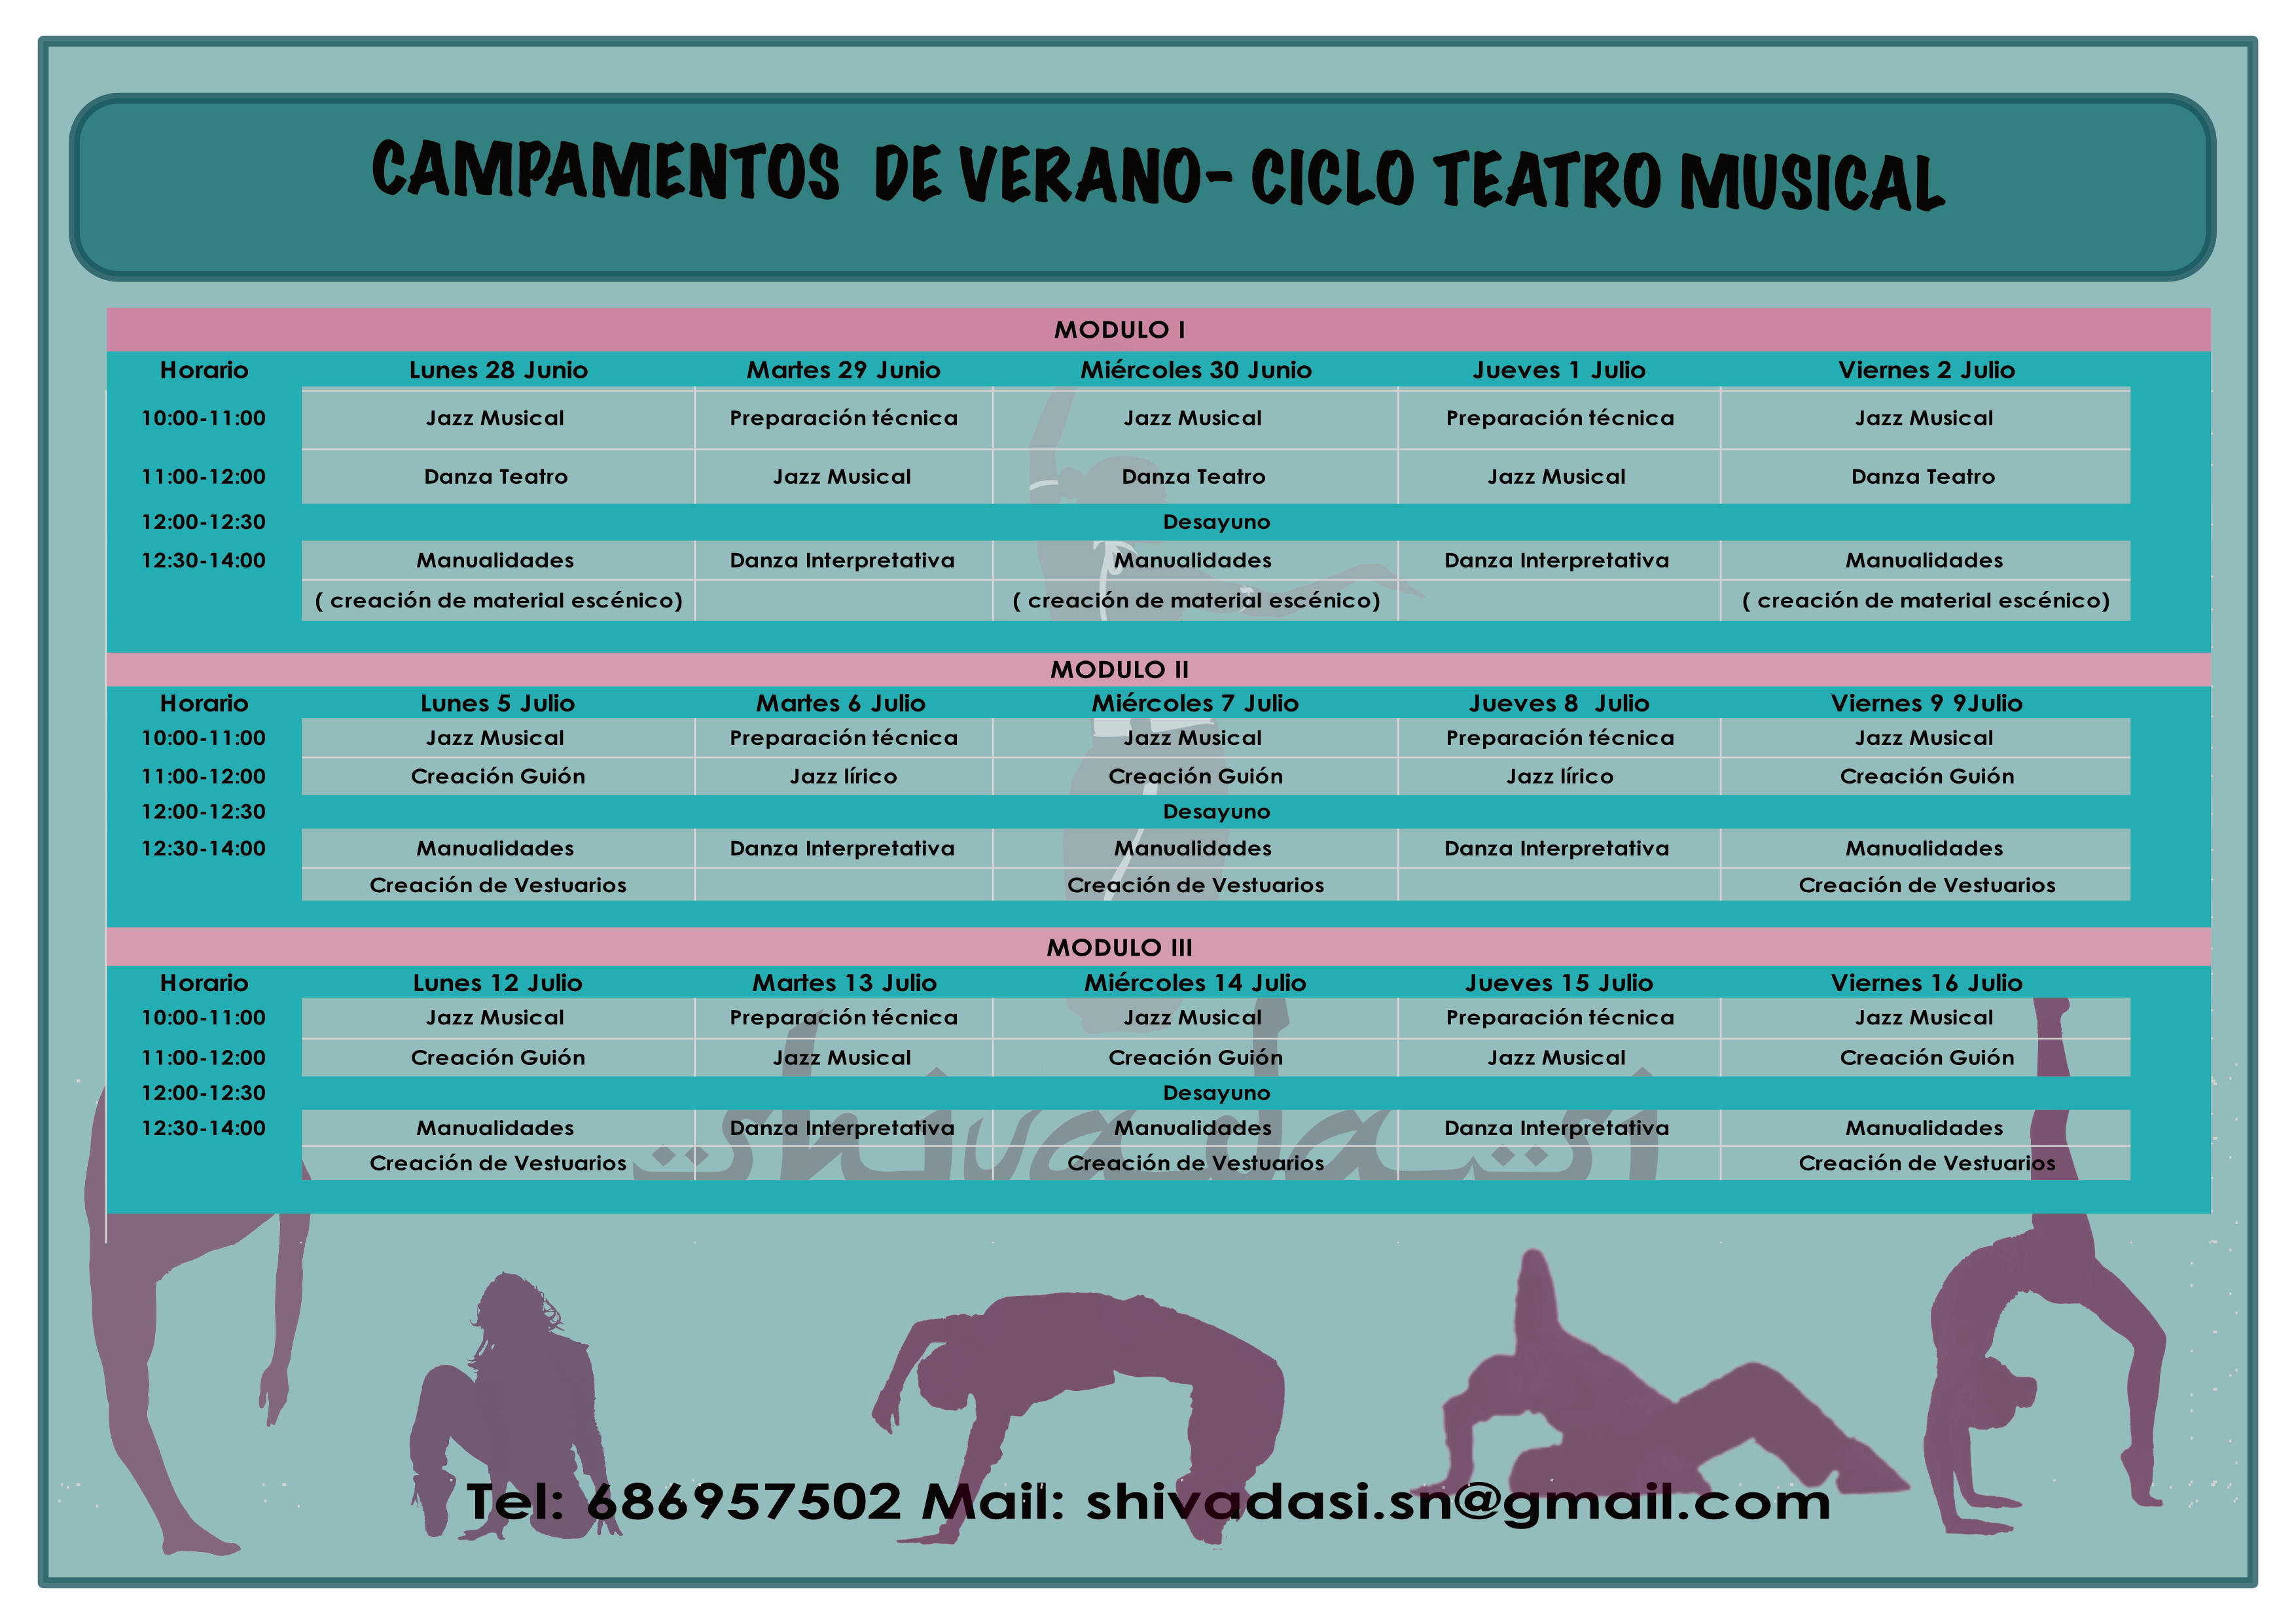 CV TATRO MUSICAL HORARIO